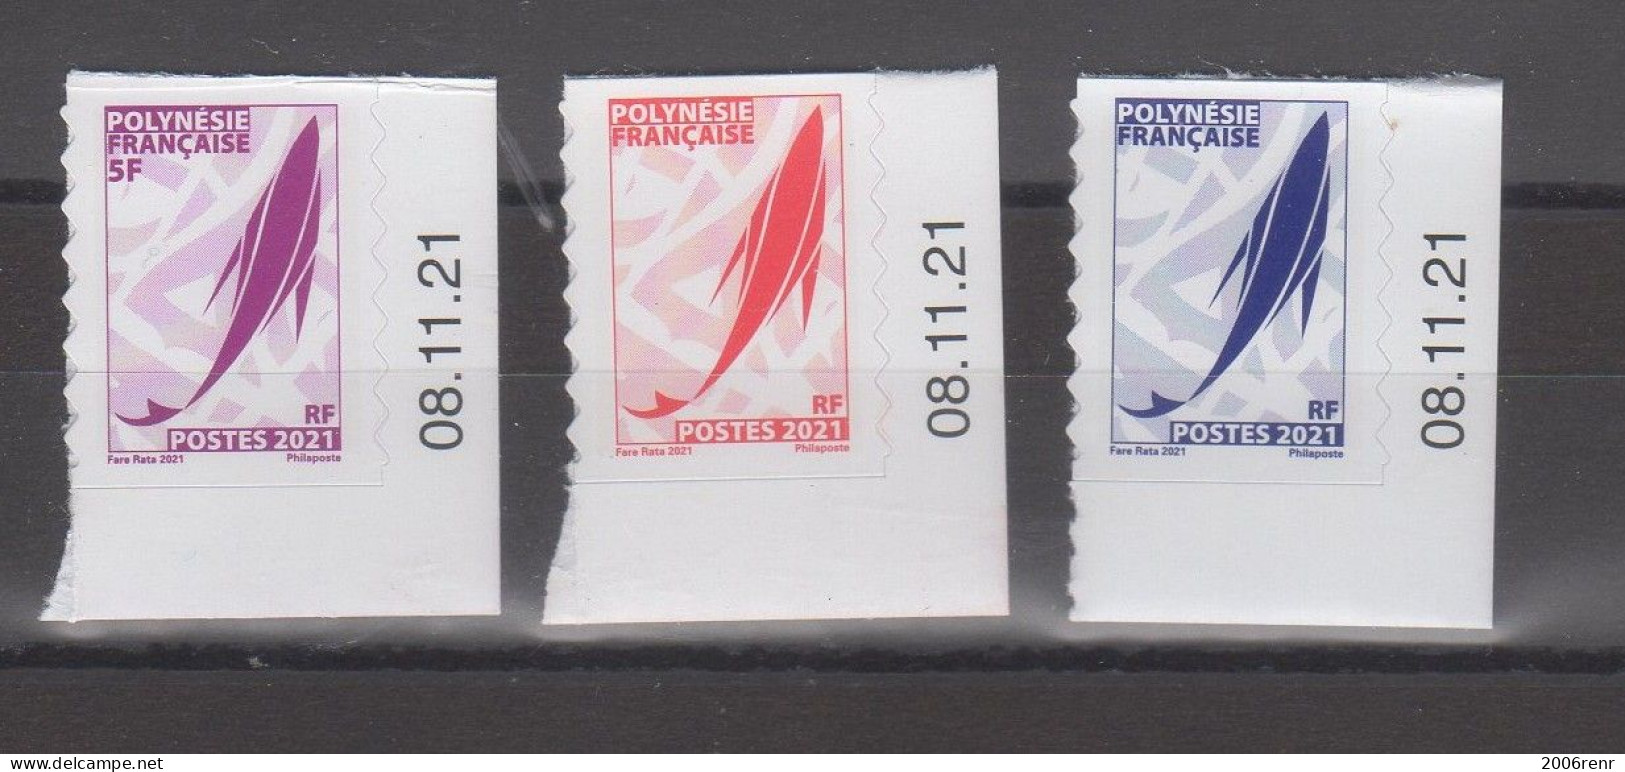 Polynésie Française Timbres De Carnet Autocollants à Usage Local "Marara" Bord De Carnet Coin Daté. - Carnets